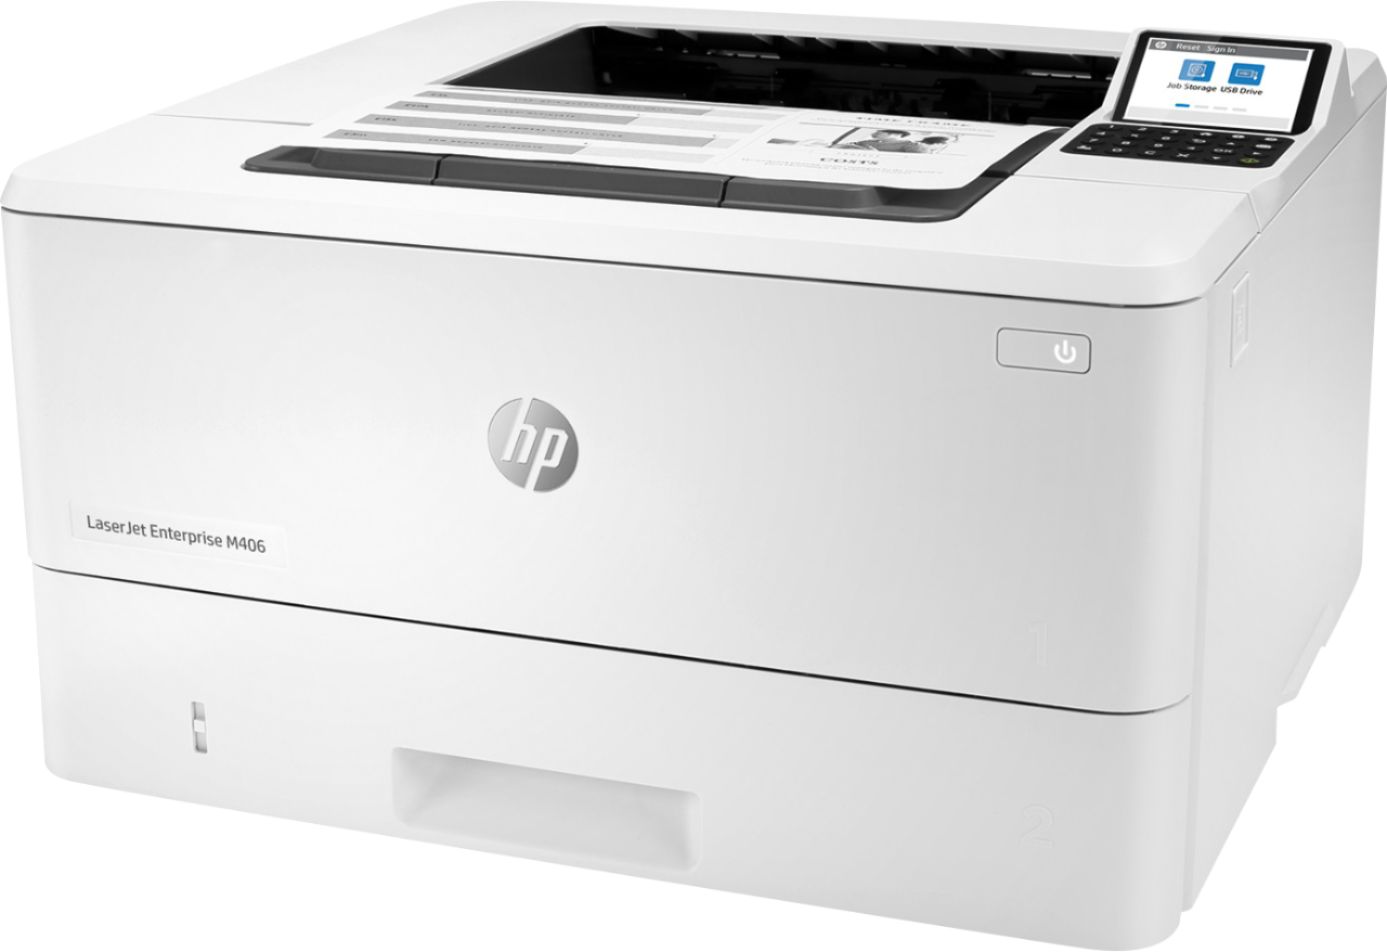 Angle View: HP - LaserJet Enterprise M406dn Black-and-White Laser Printer - White